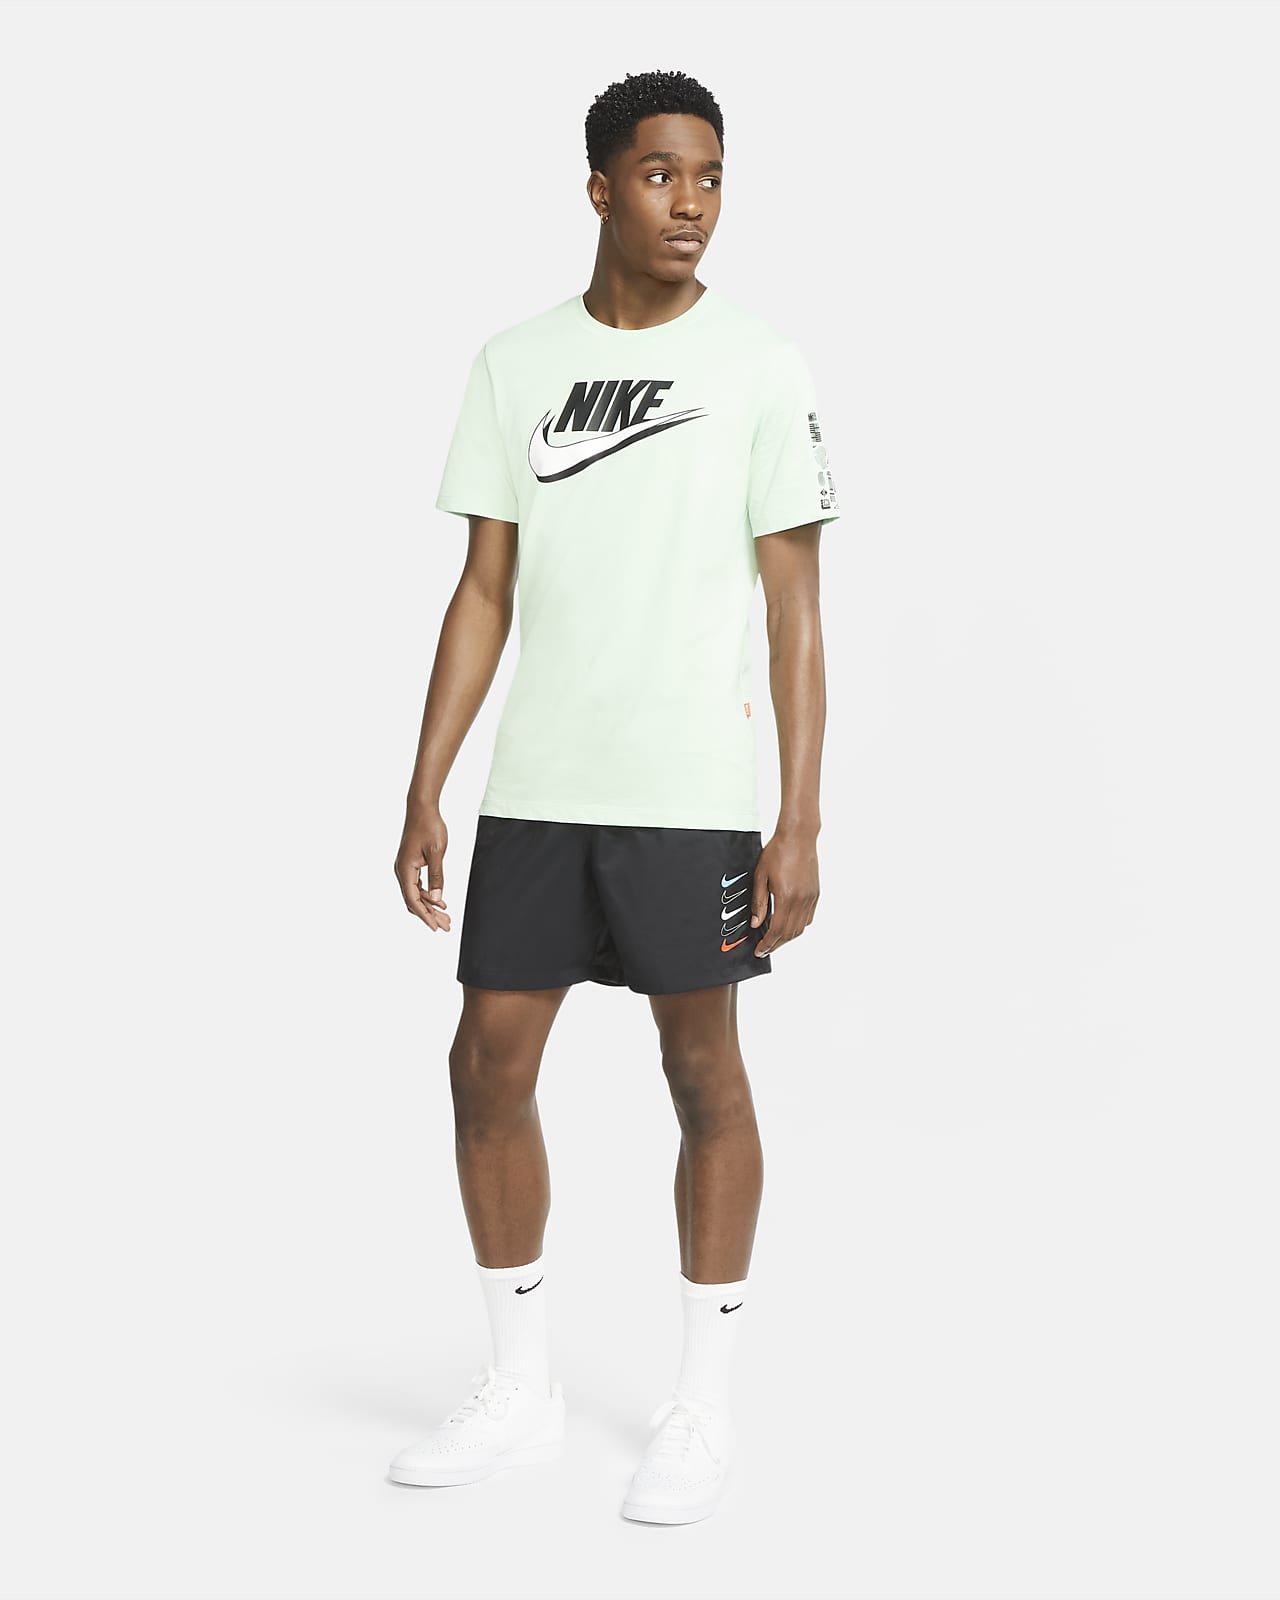 Nike公式 ナイキ スポーツウェア メンズ ウーブン ショートパンツ オンラインストア 通販サイト